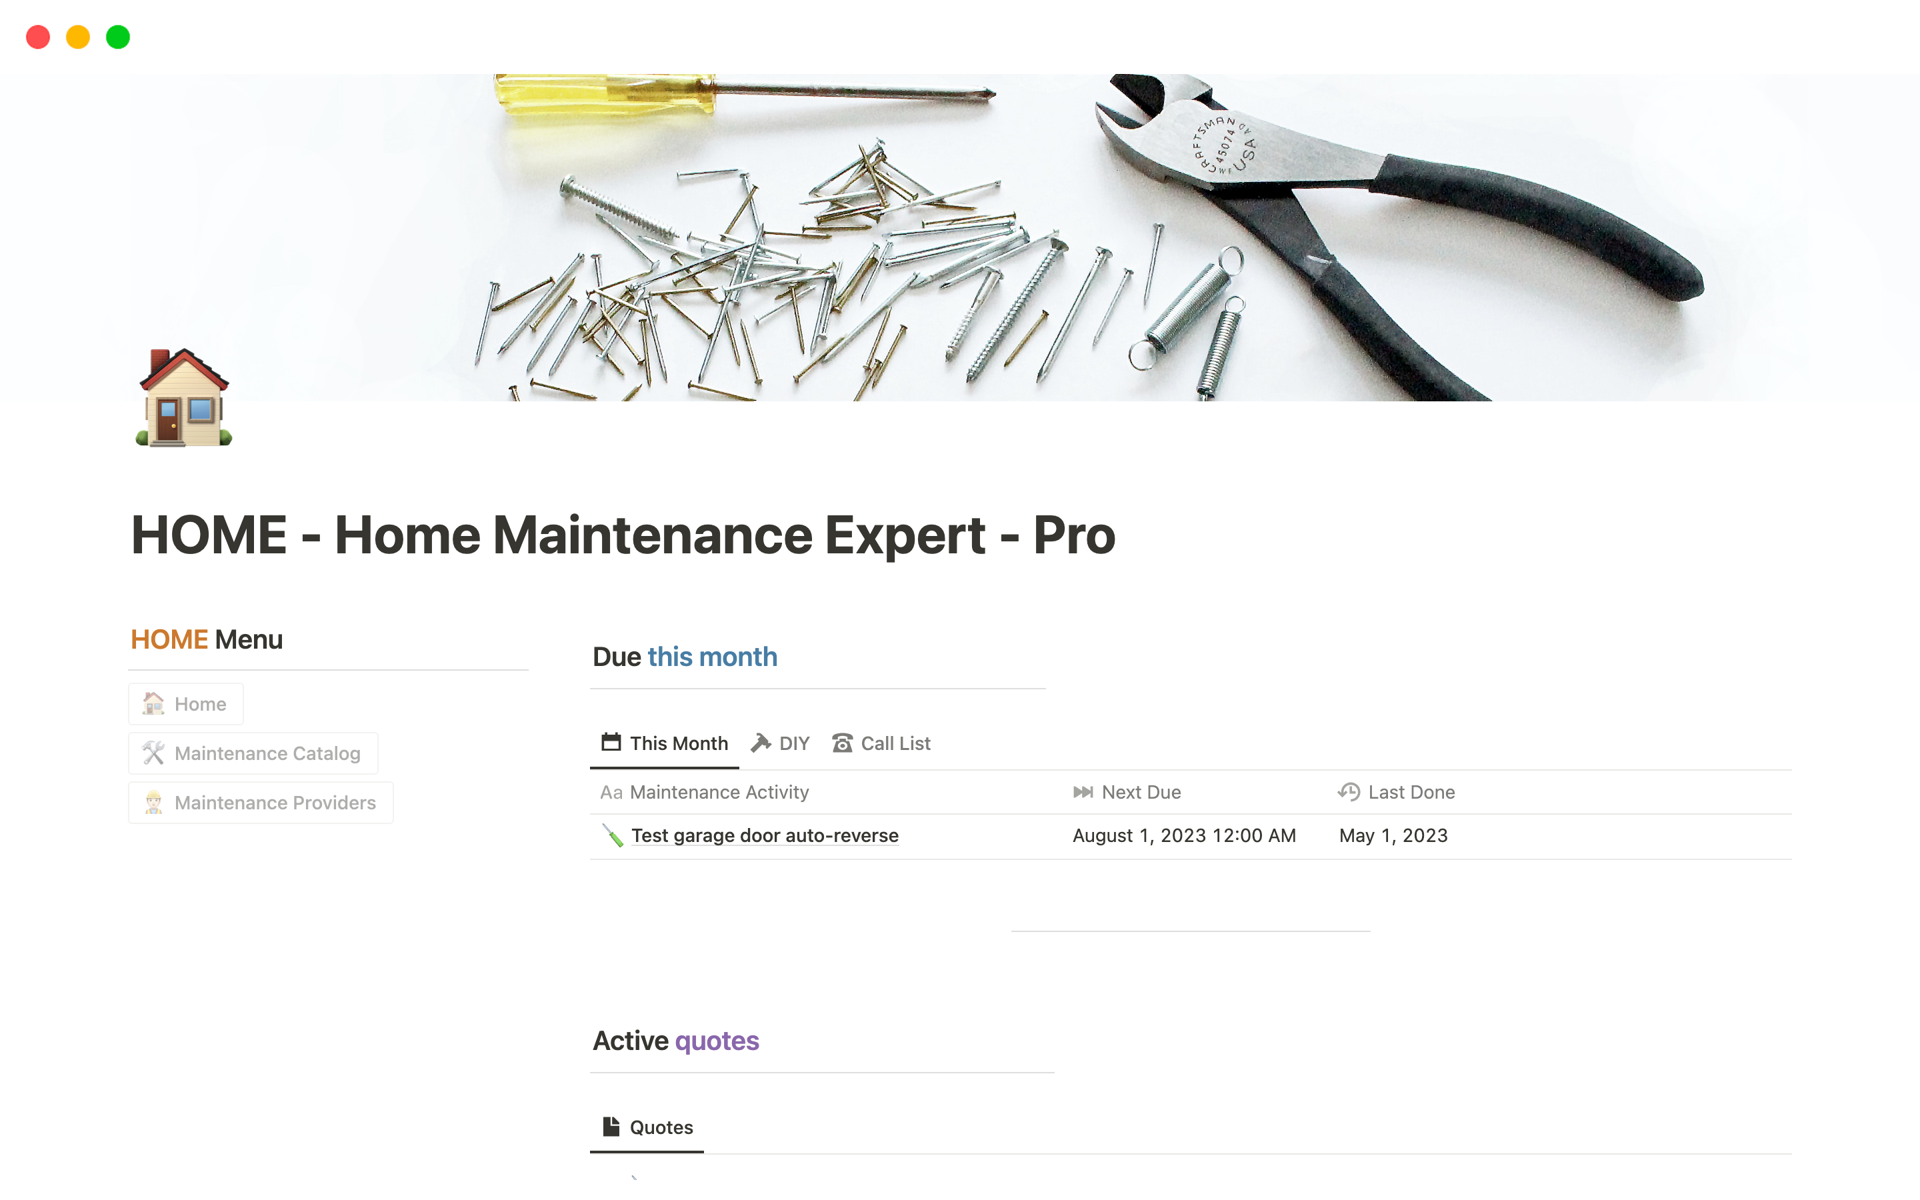 Uma prévia do modelo para HOME - Home Maintenance Expert - Pro